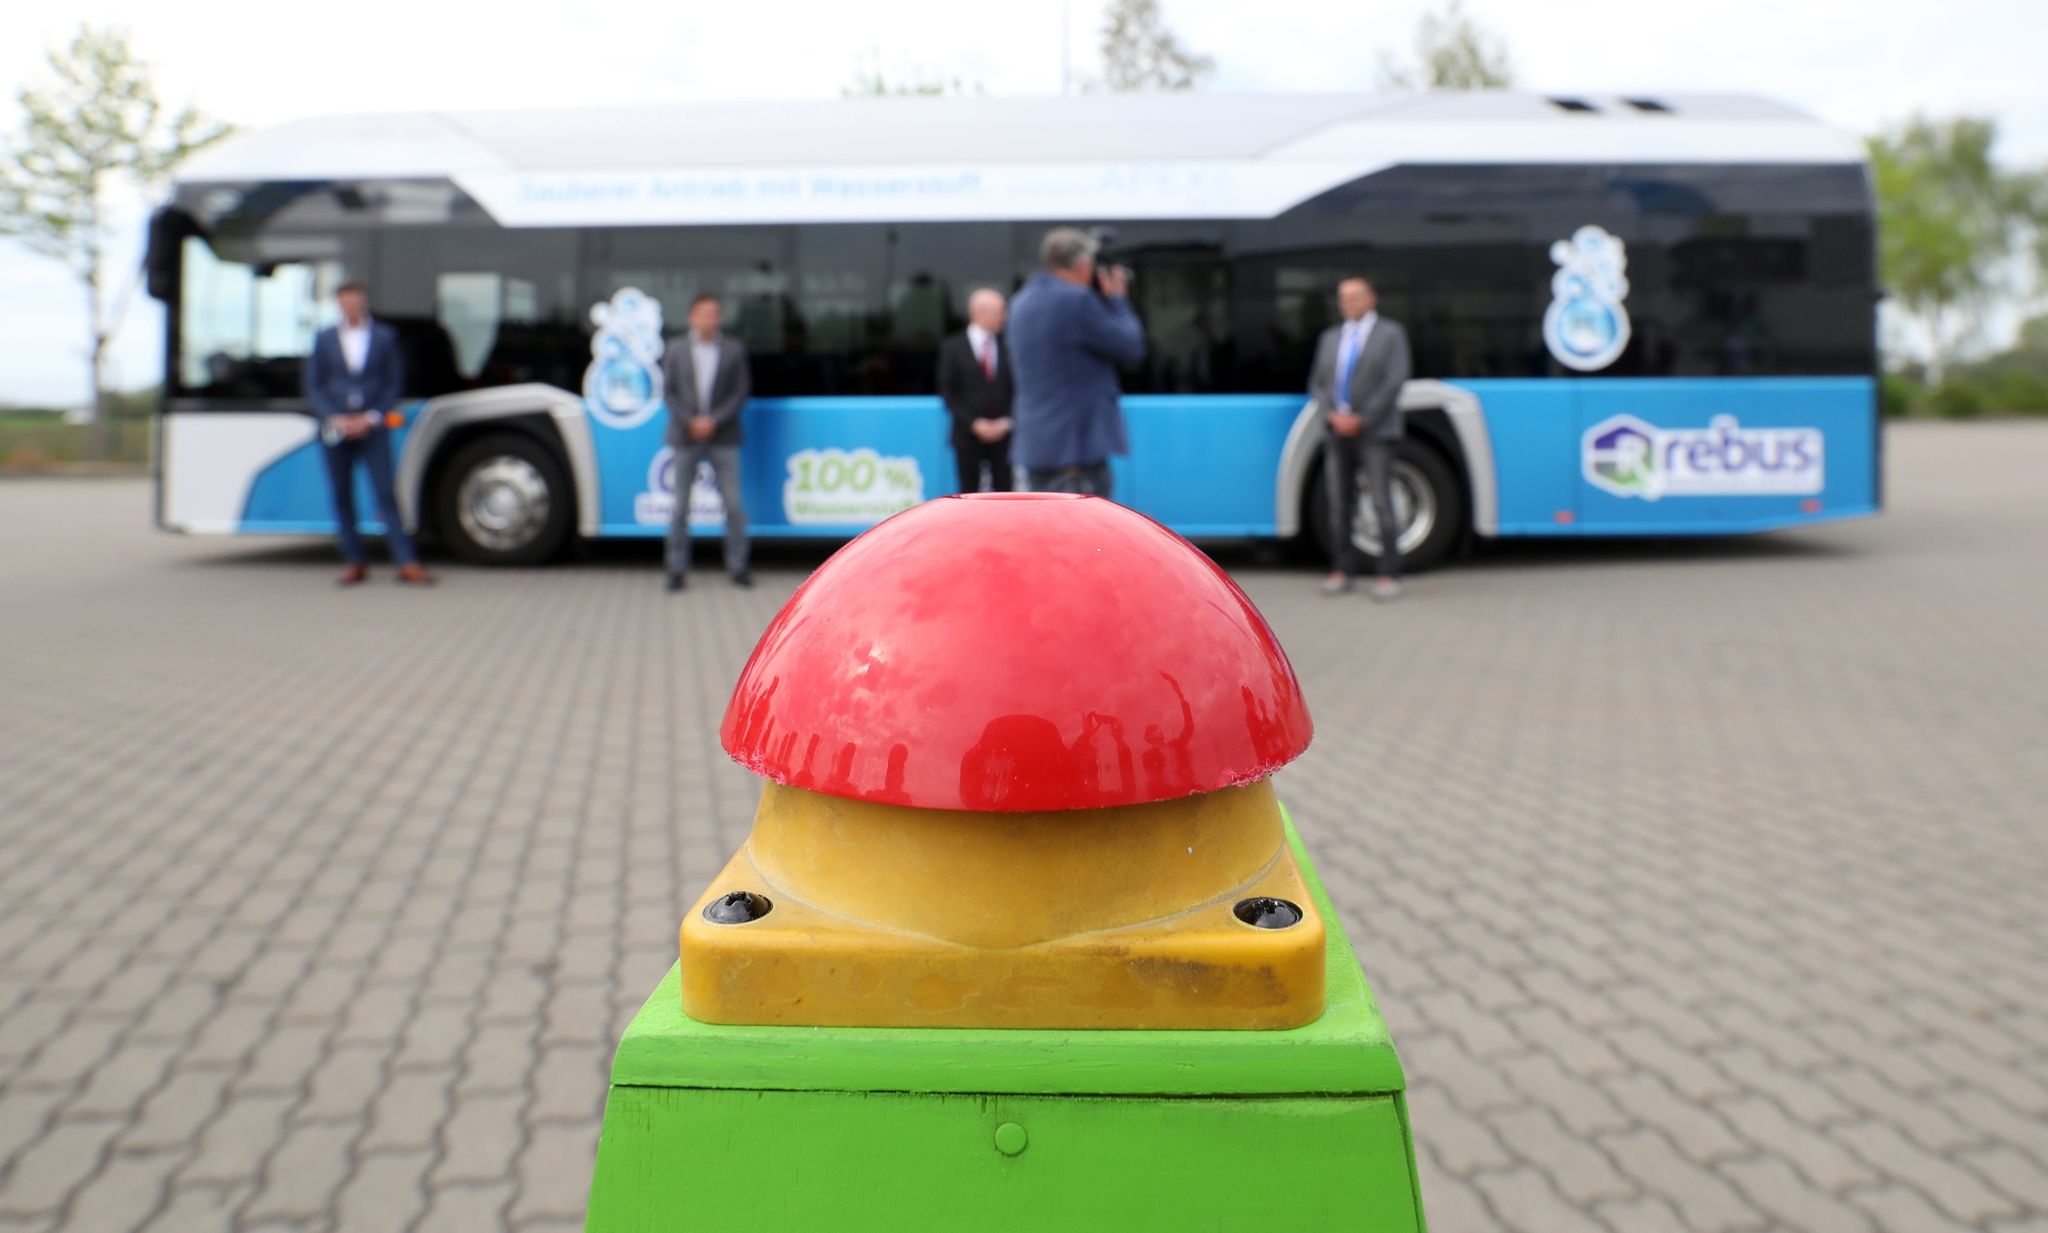 Der erste Wasserstoffbus in Mecklenburg-Vorpommern wird vorgestellt, ein roter Buzzer zur offiziellen Inbetriebnahme steht im Vordergrund bereit.